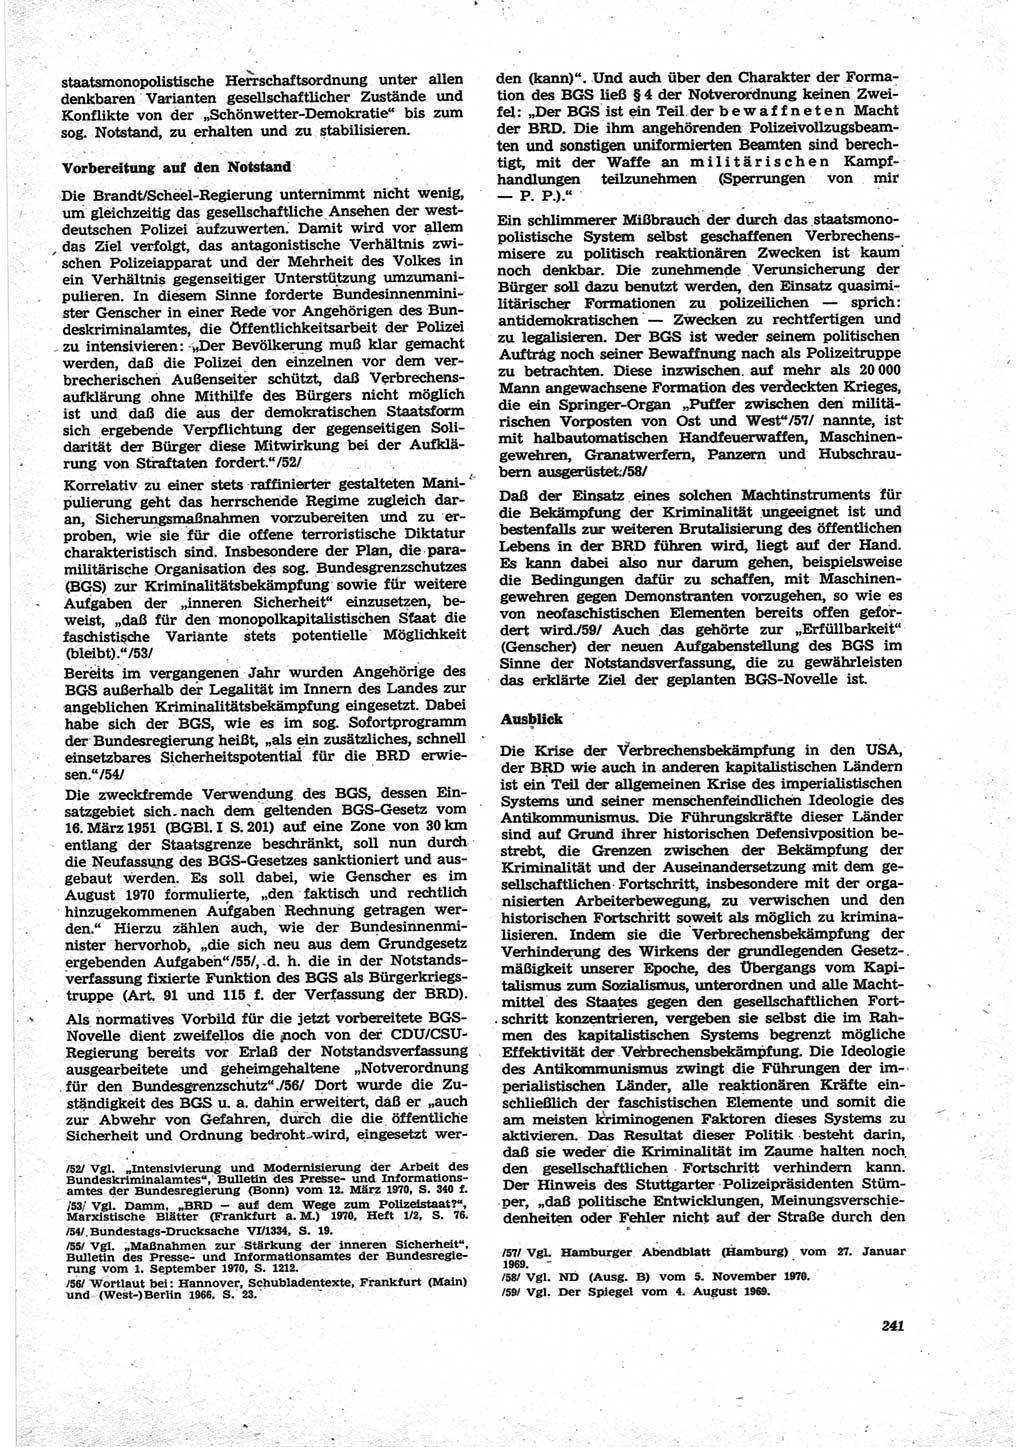 Neue Justiz (NJ), Zeitschrift für Recht und Rechtswissenschaft [Deutsche Demokratische Republik (DDR)], 25. Jahrgang 1971, Seite 241 (NJ DDR 1971, S. 241)